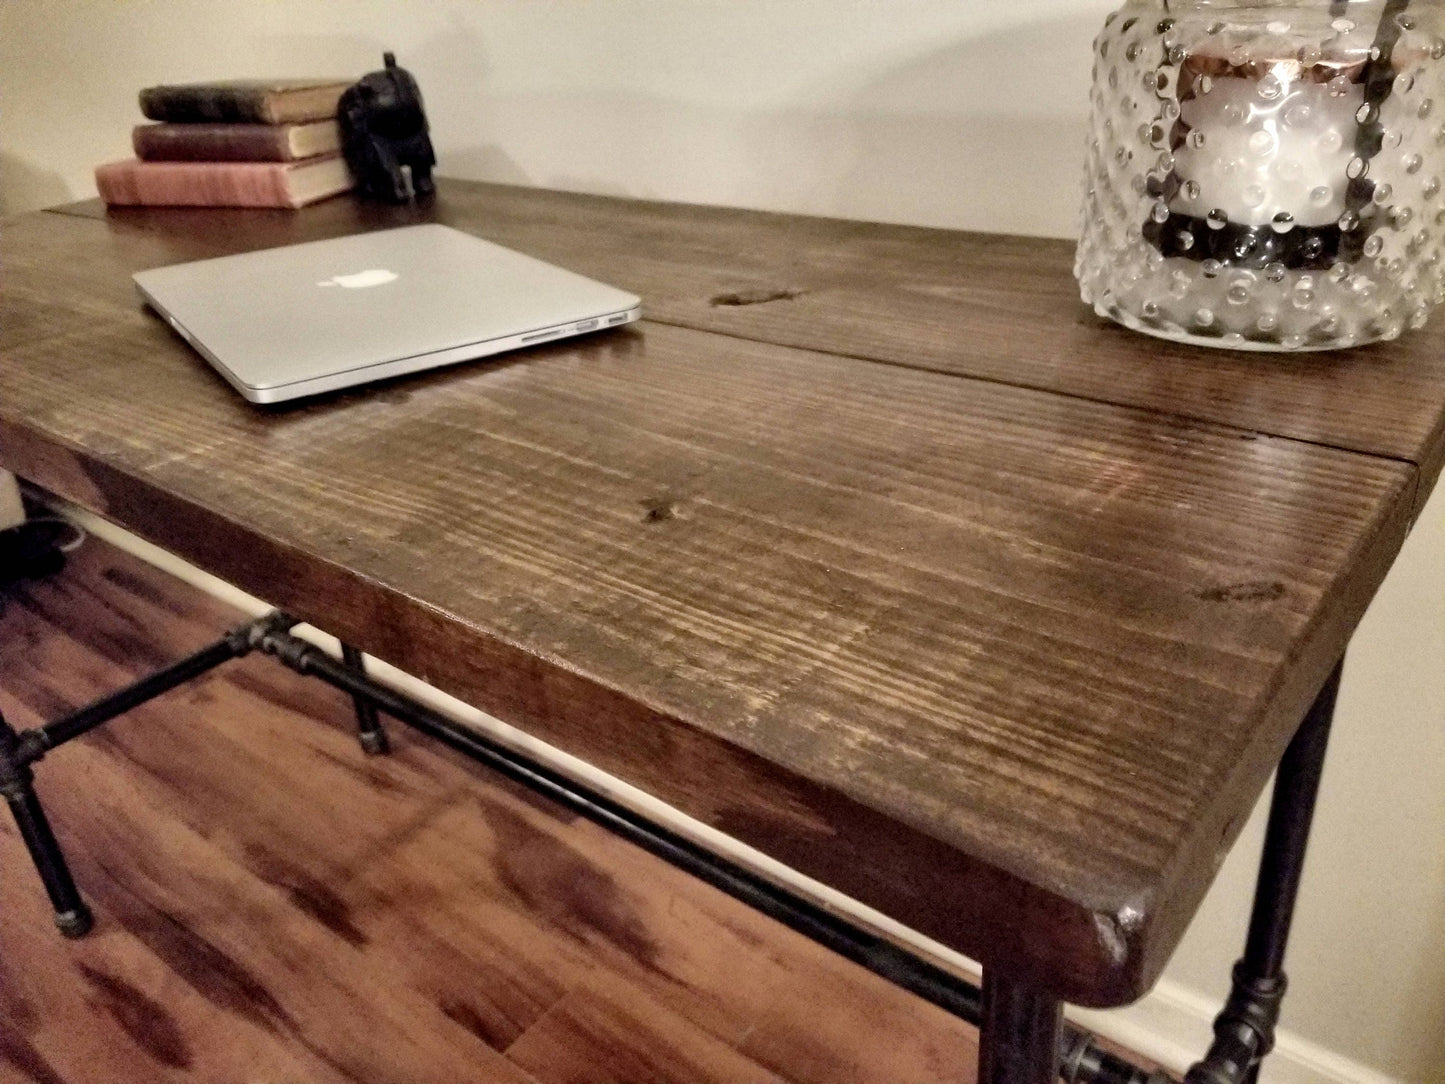 Custom Steel and Wood Desk